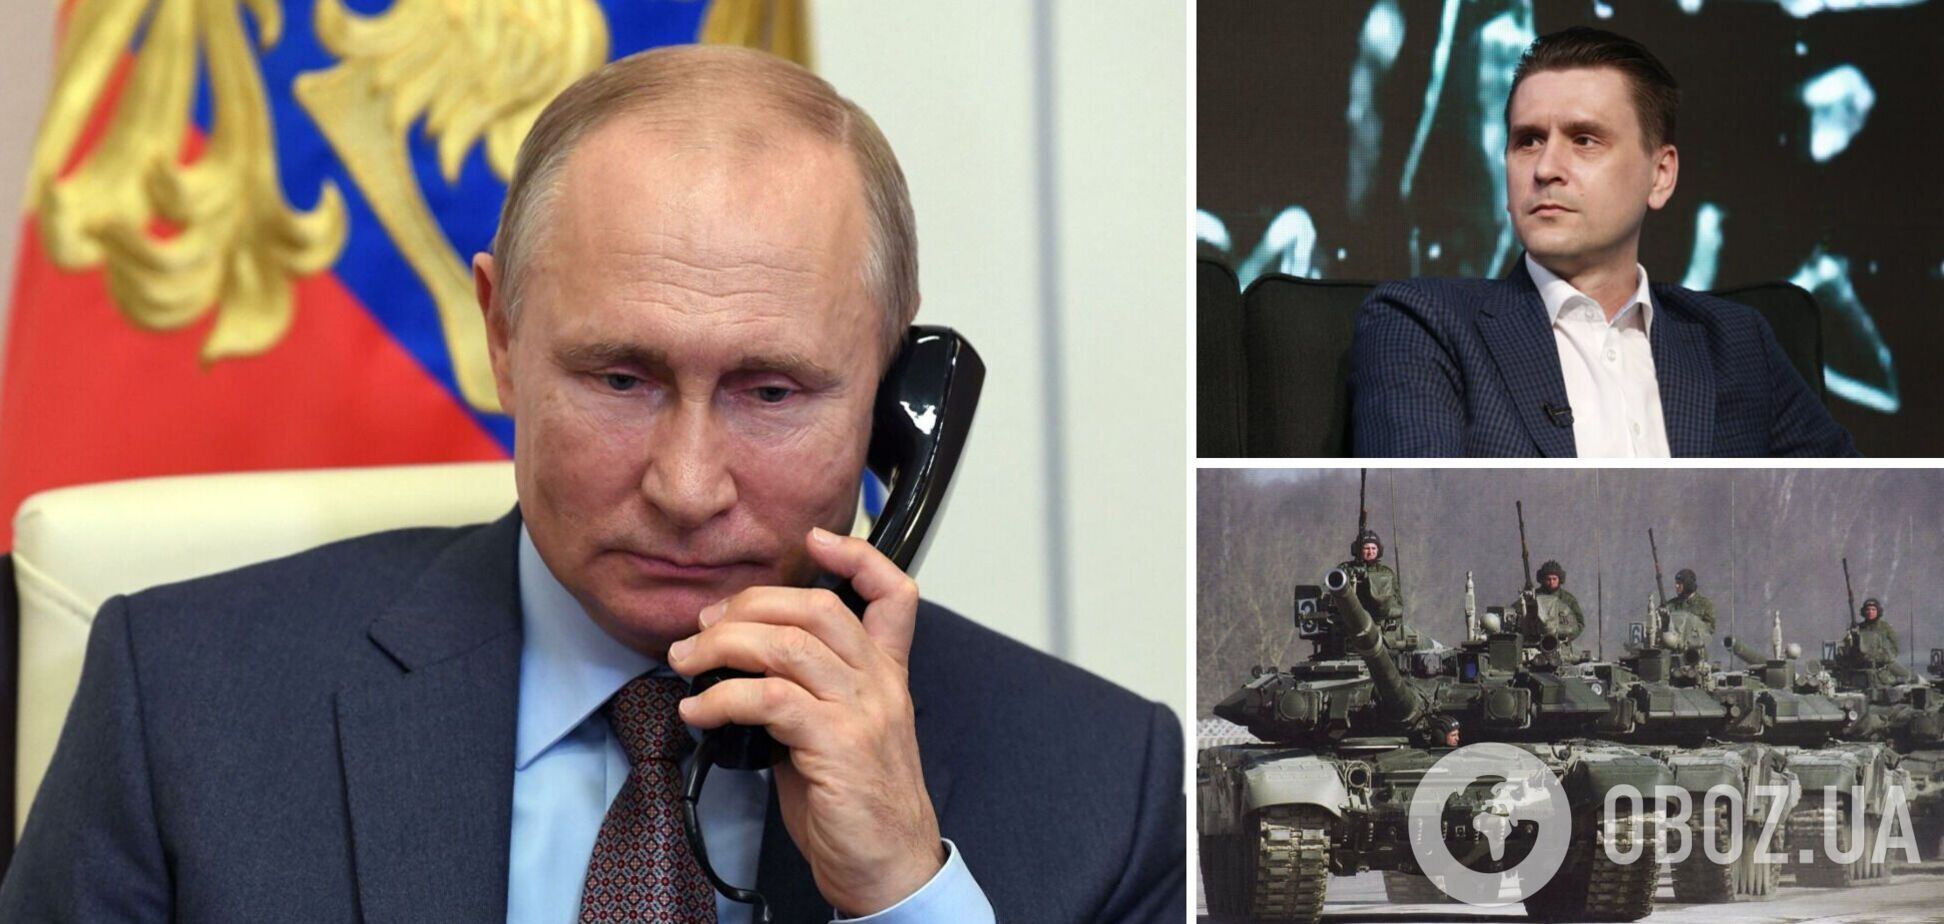 Путин пытается шантажировать Запад, но у него это не получается, считает Коваленко